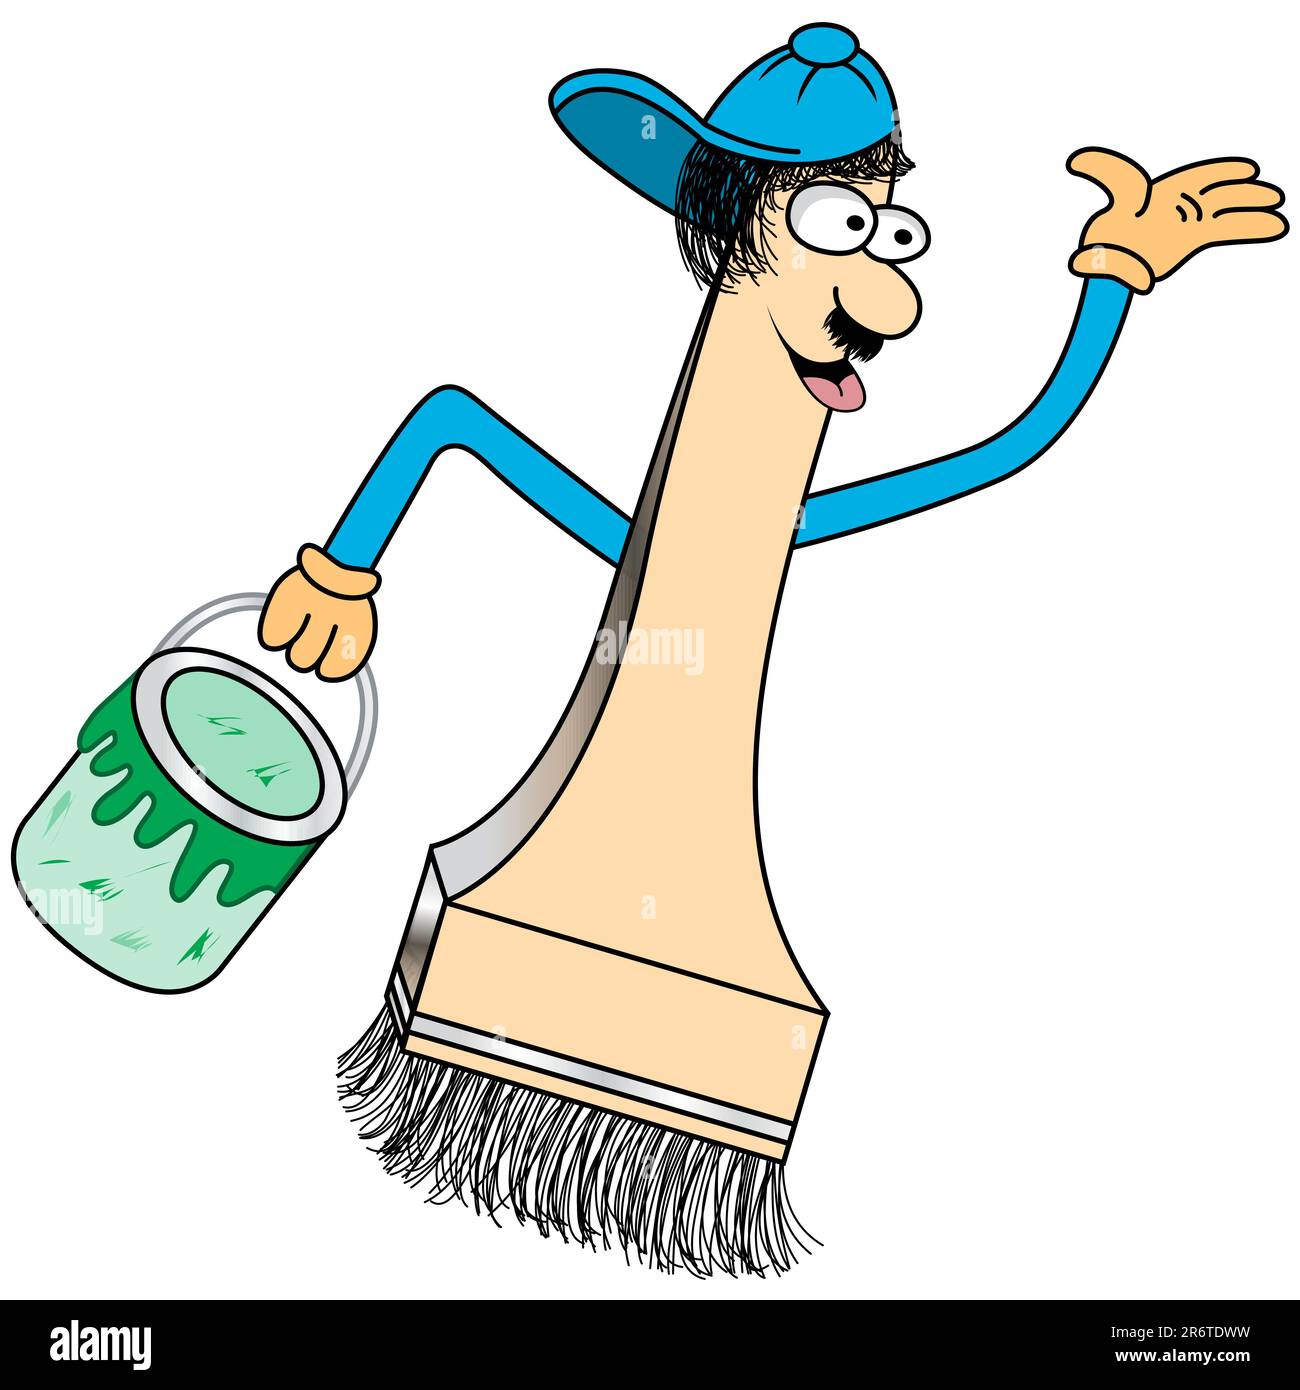 Dipingi il personaggio dei cartoni animati con un viso divertente e un berretto da baseball che regge una pentola di vernice verde. Illustrazione Vettoriale